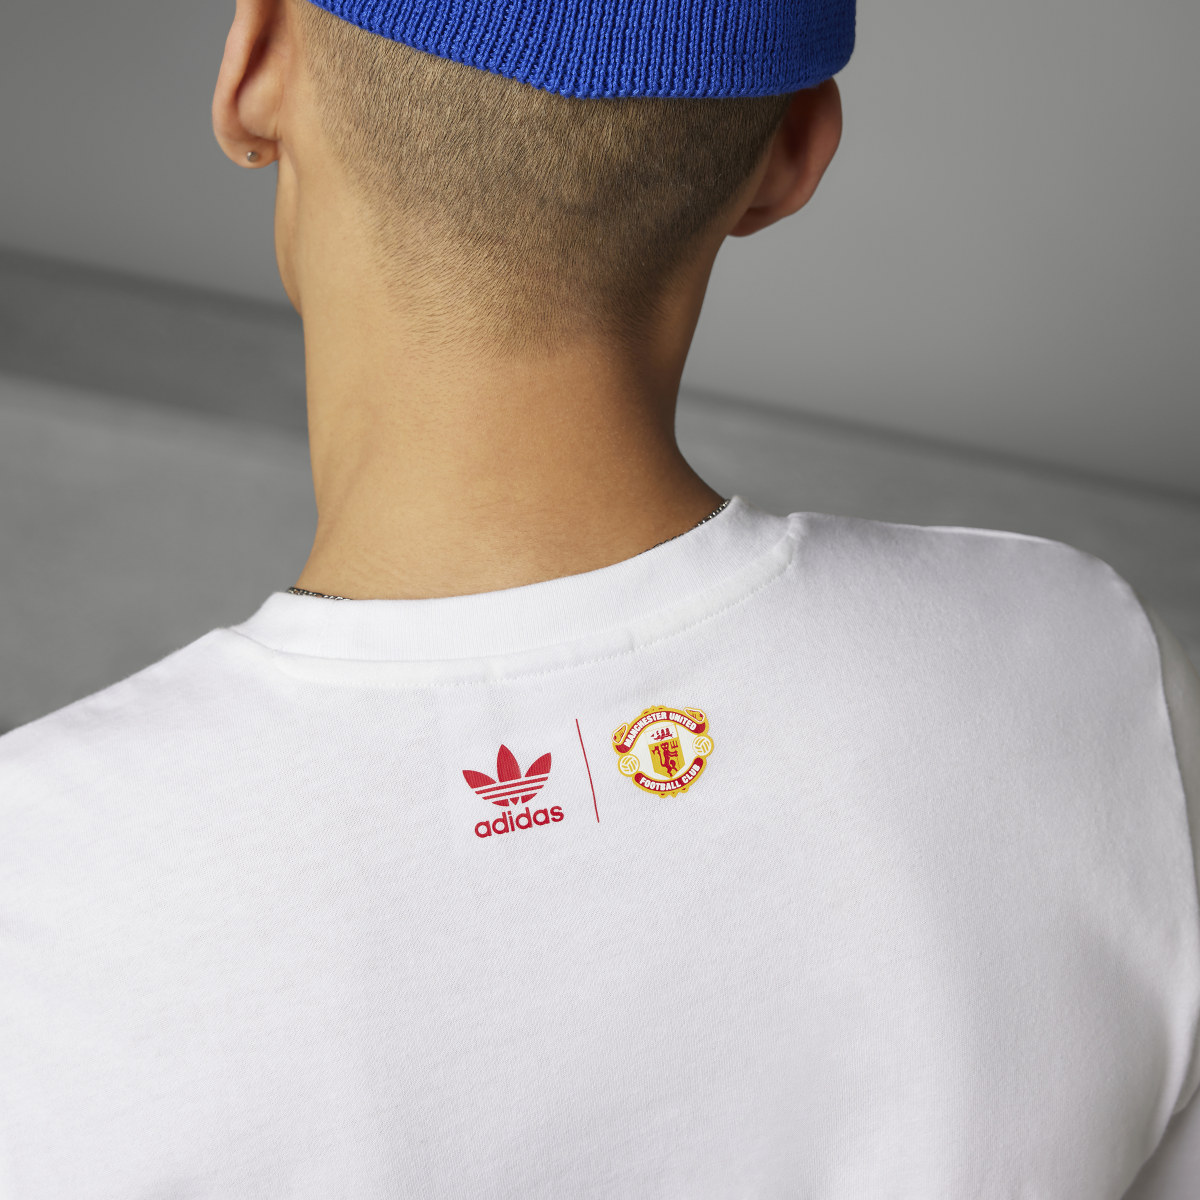 Adidas T-shirt Trefoil OG do Manchester United. 8